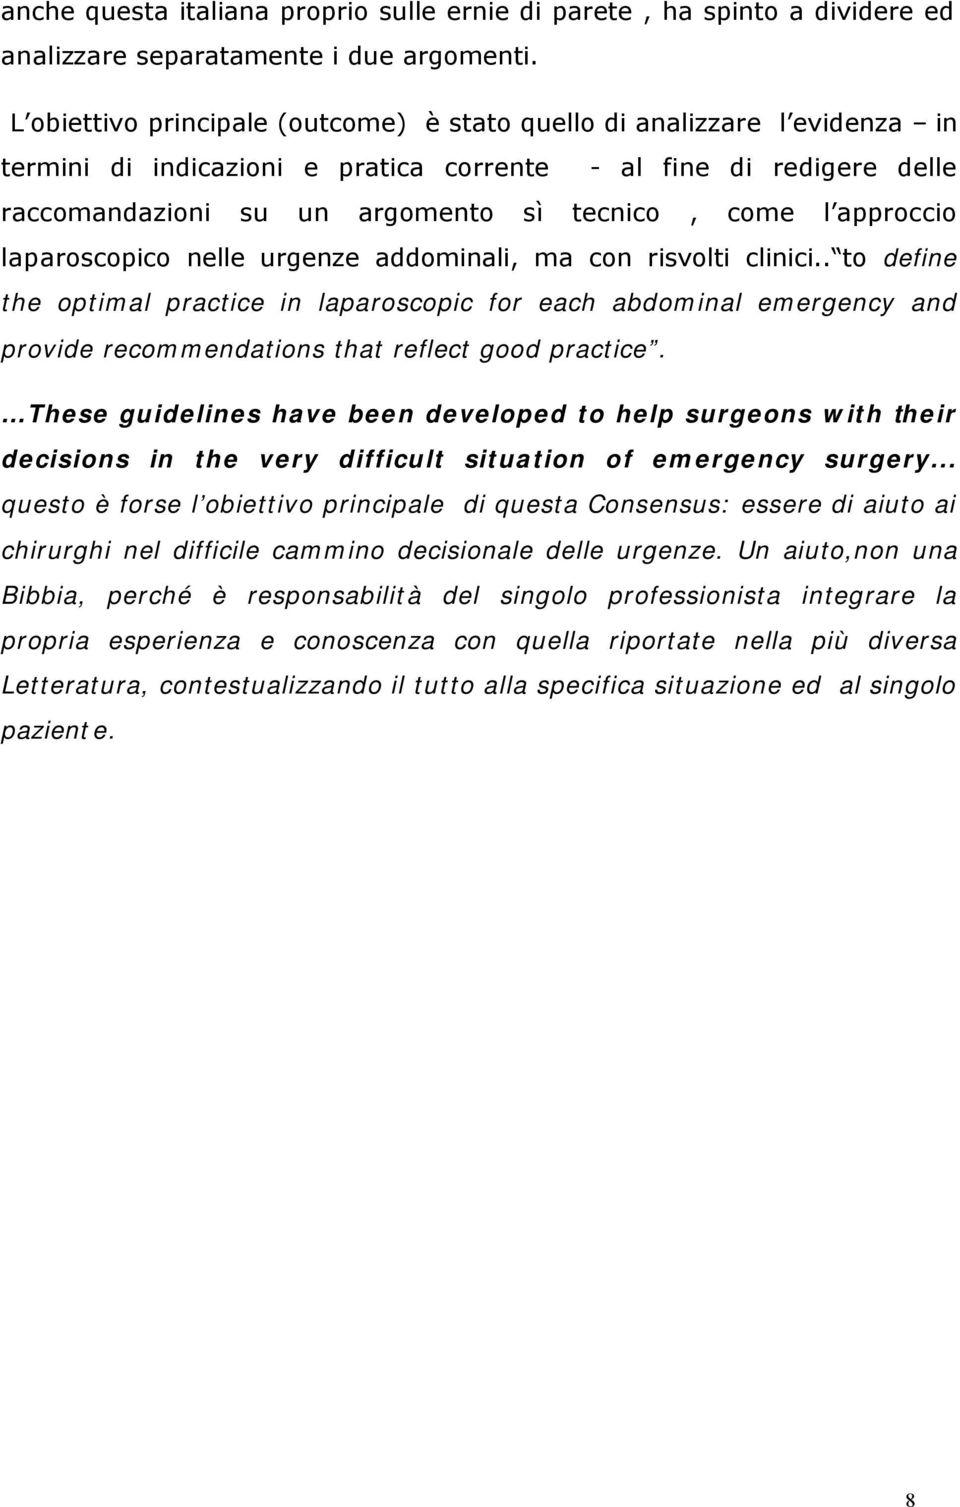 approccio laparoscopico nelle urgenze addominali, ma con risvolti clinici.